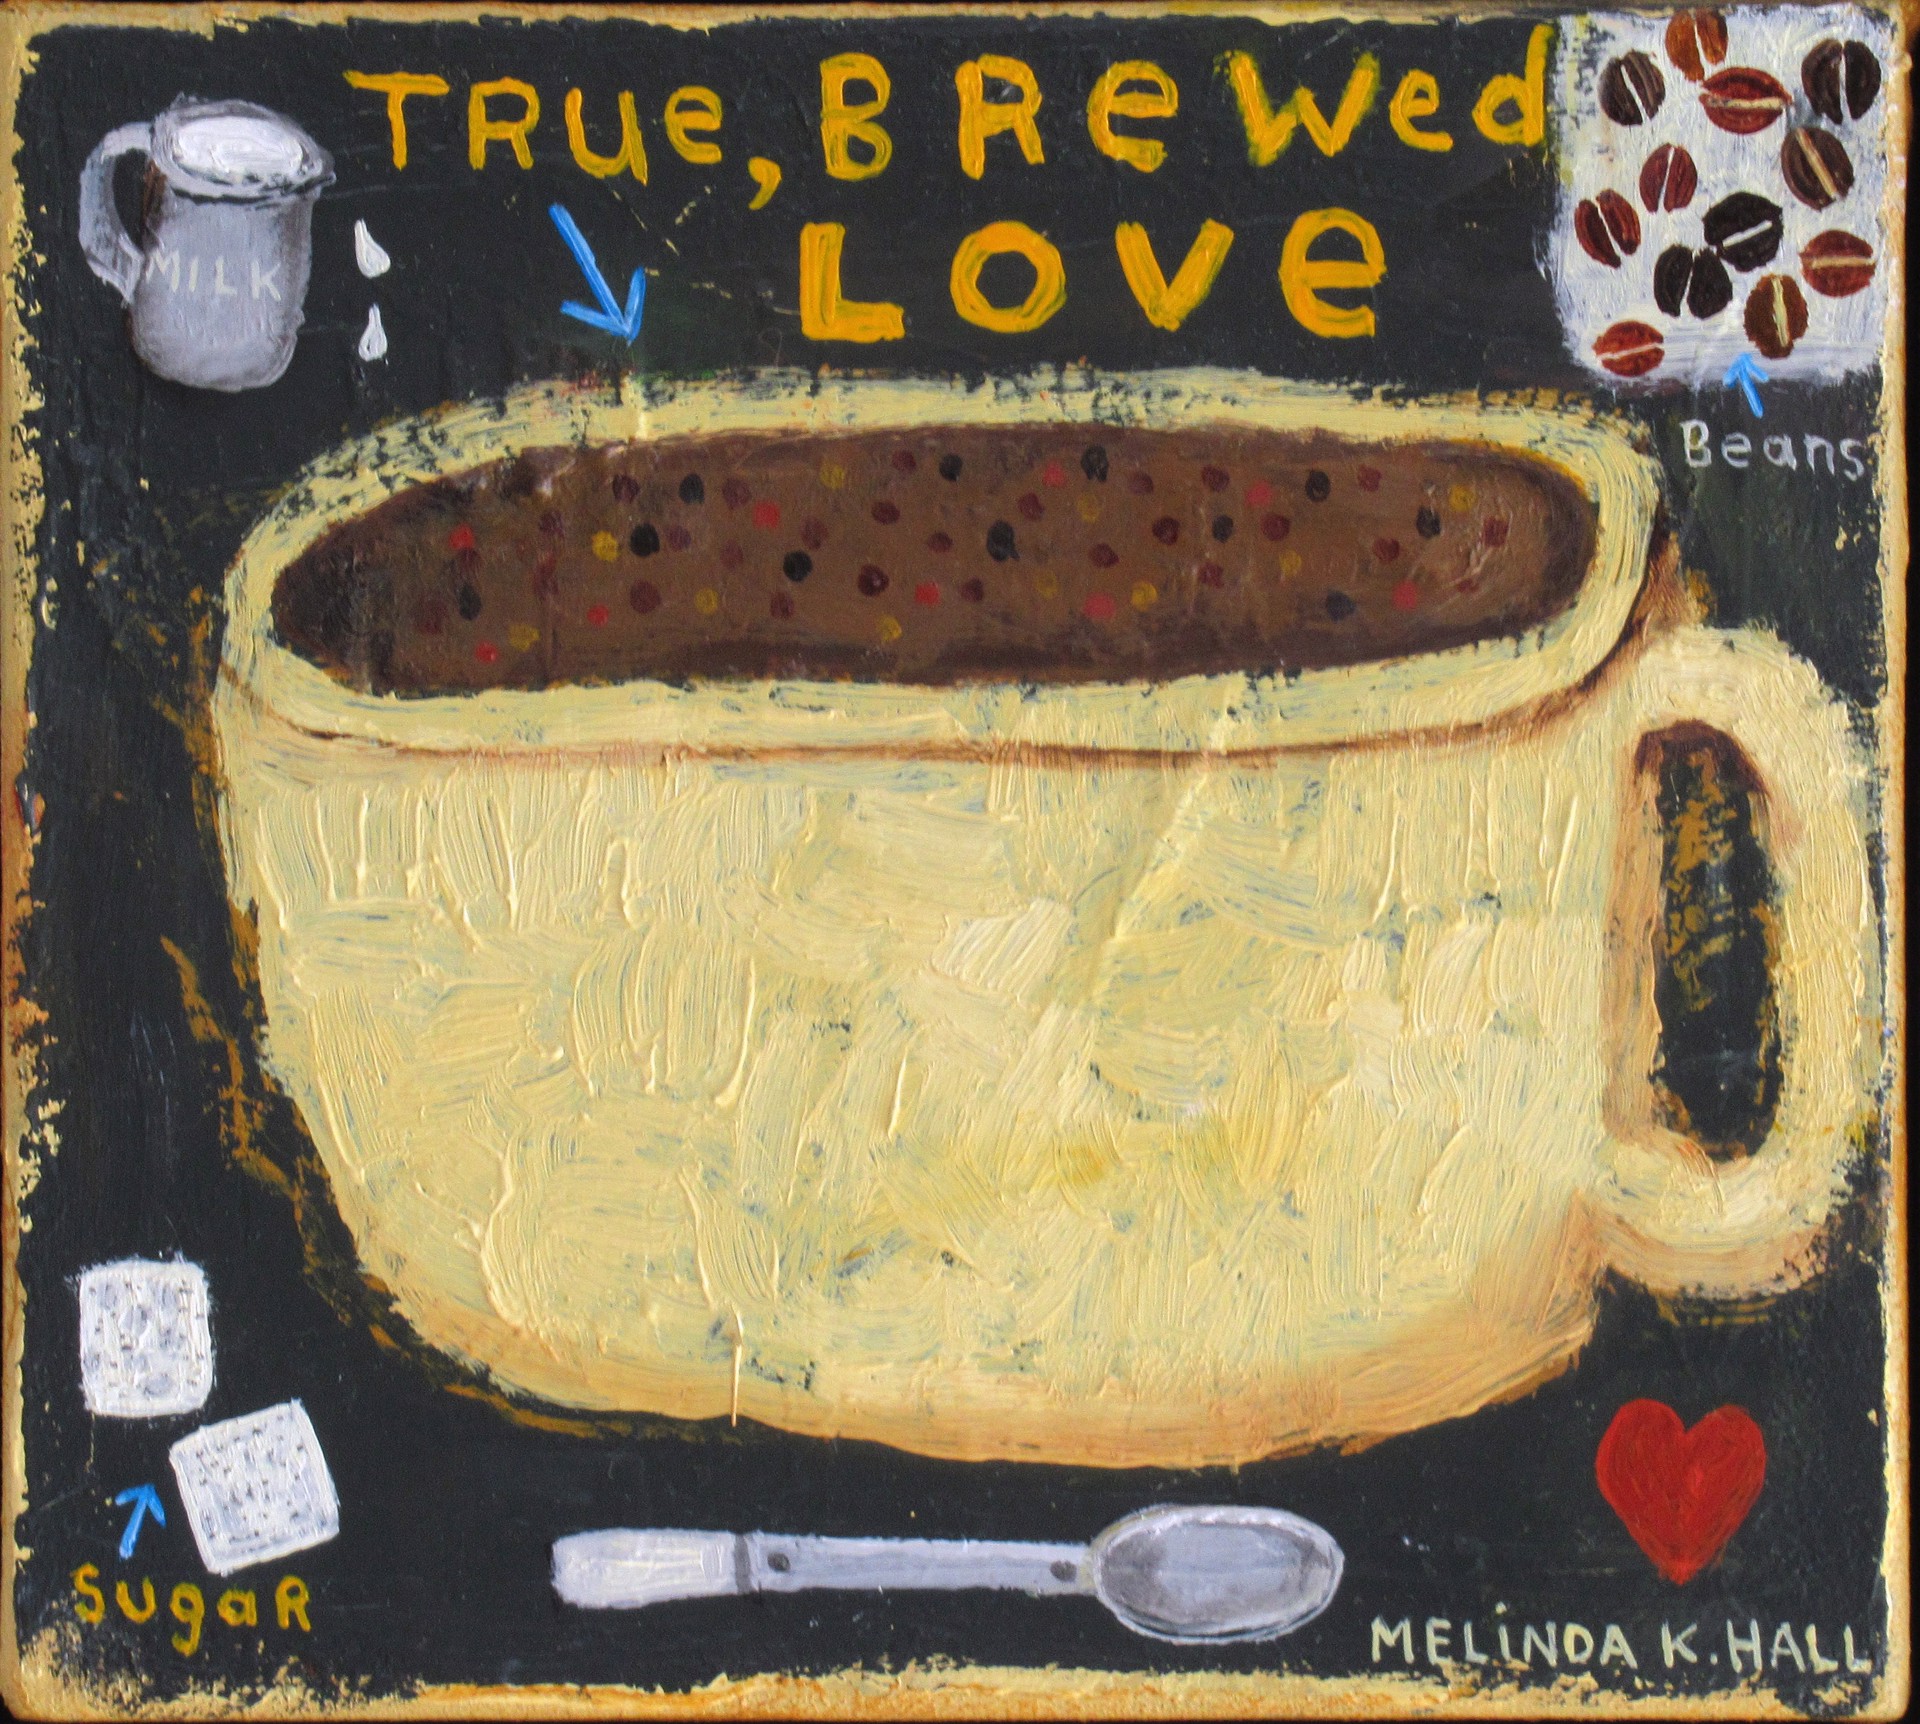 True, Brewed Love by Melinda K. Hall